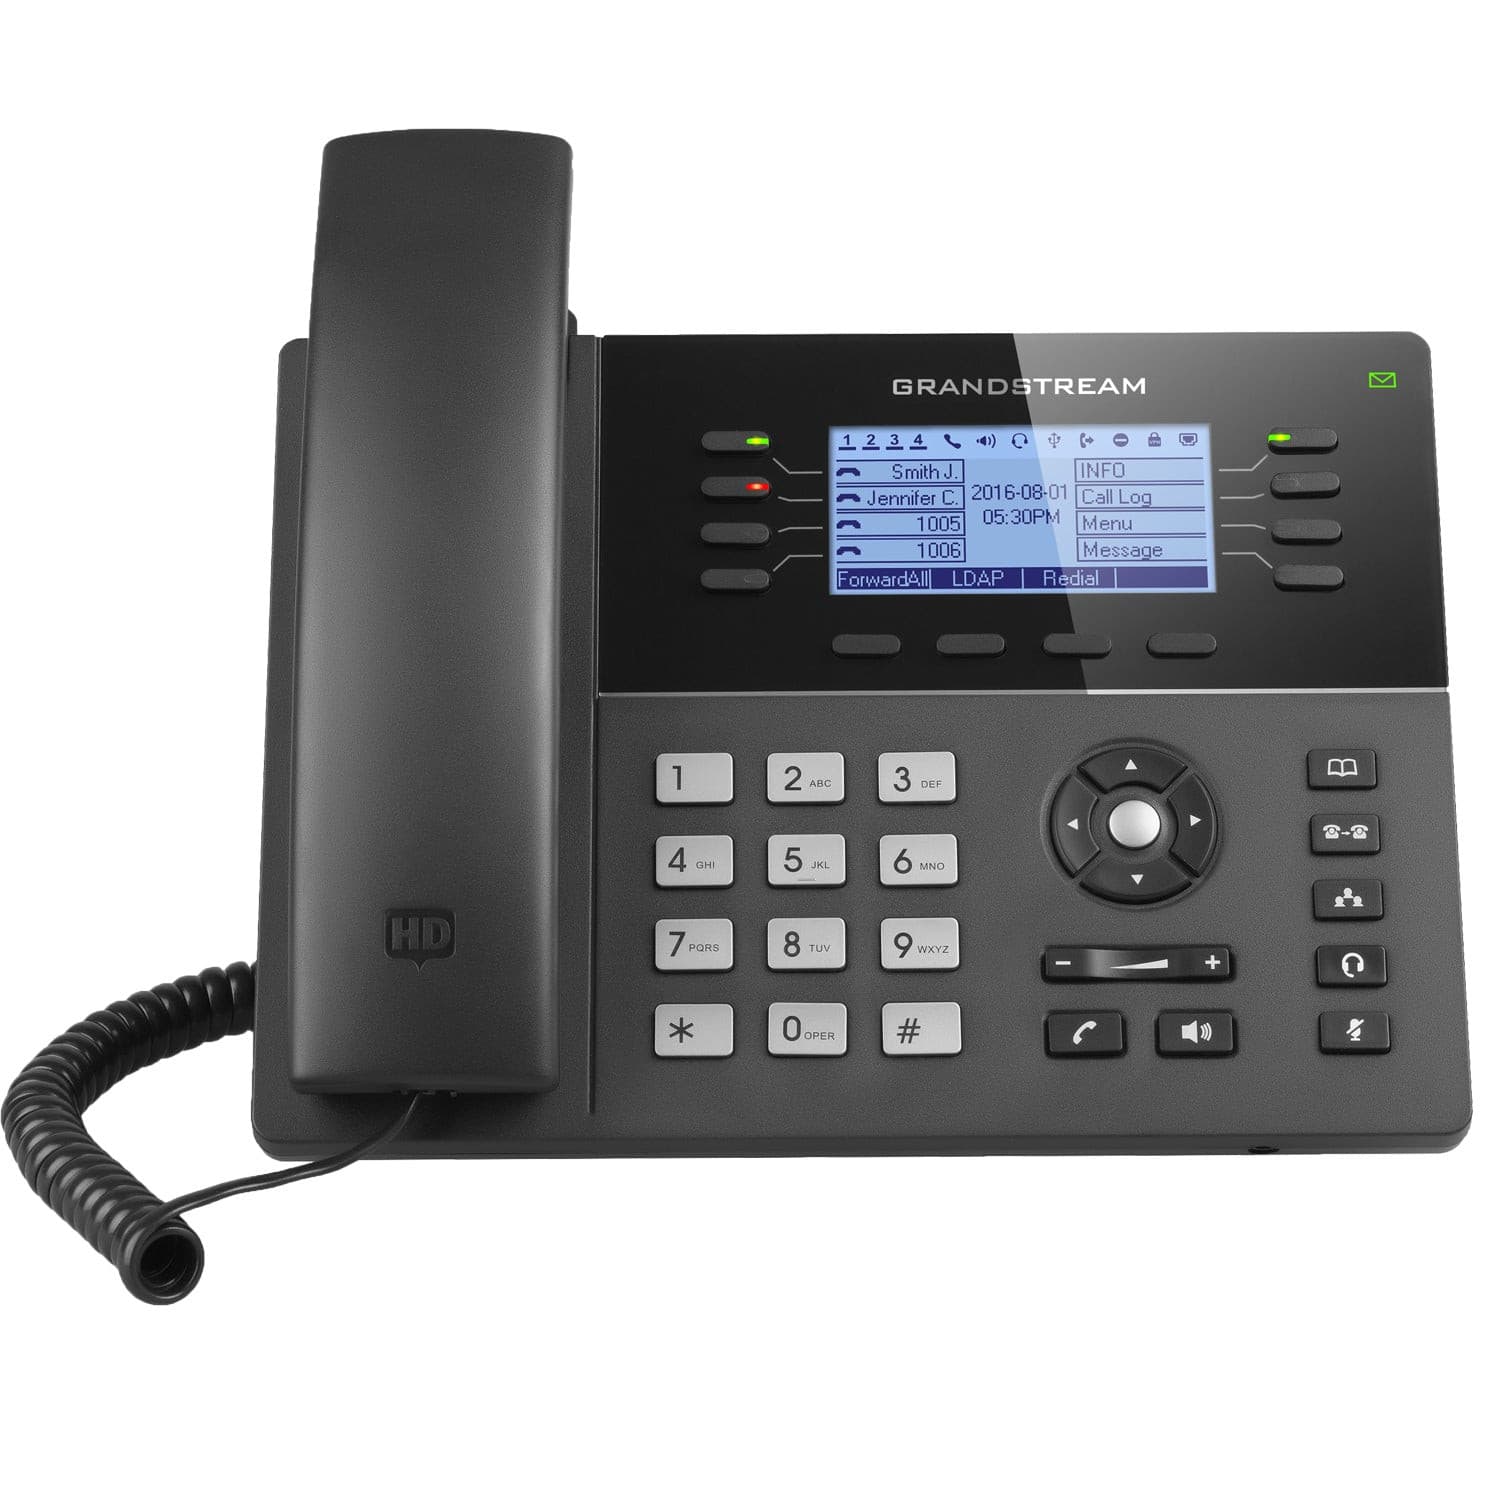 GXP1782 - Premium  from Vanilla Telecoms Ltd. - Just €85.00! Shop now at Vanilla Telecoms Ltd.